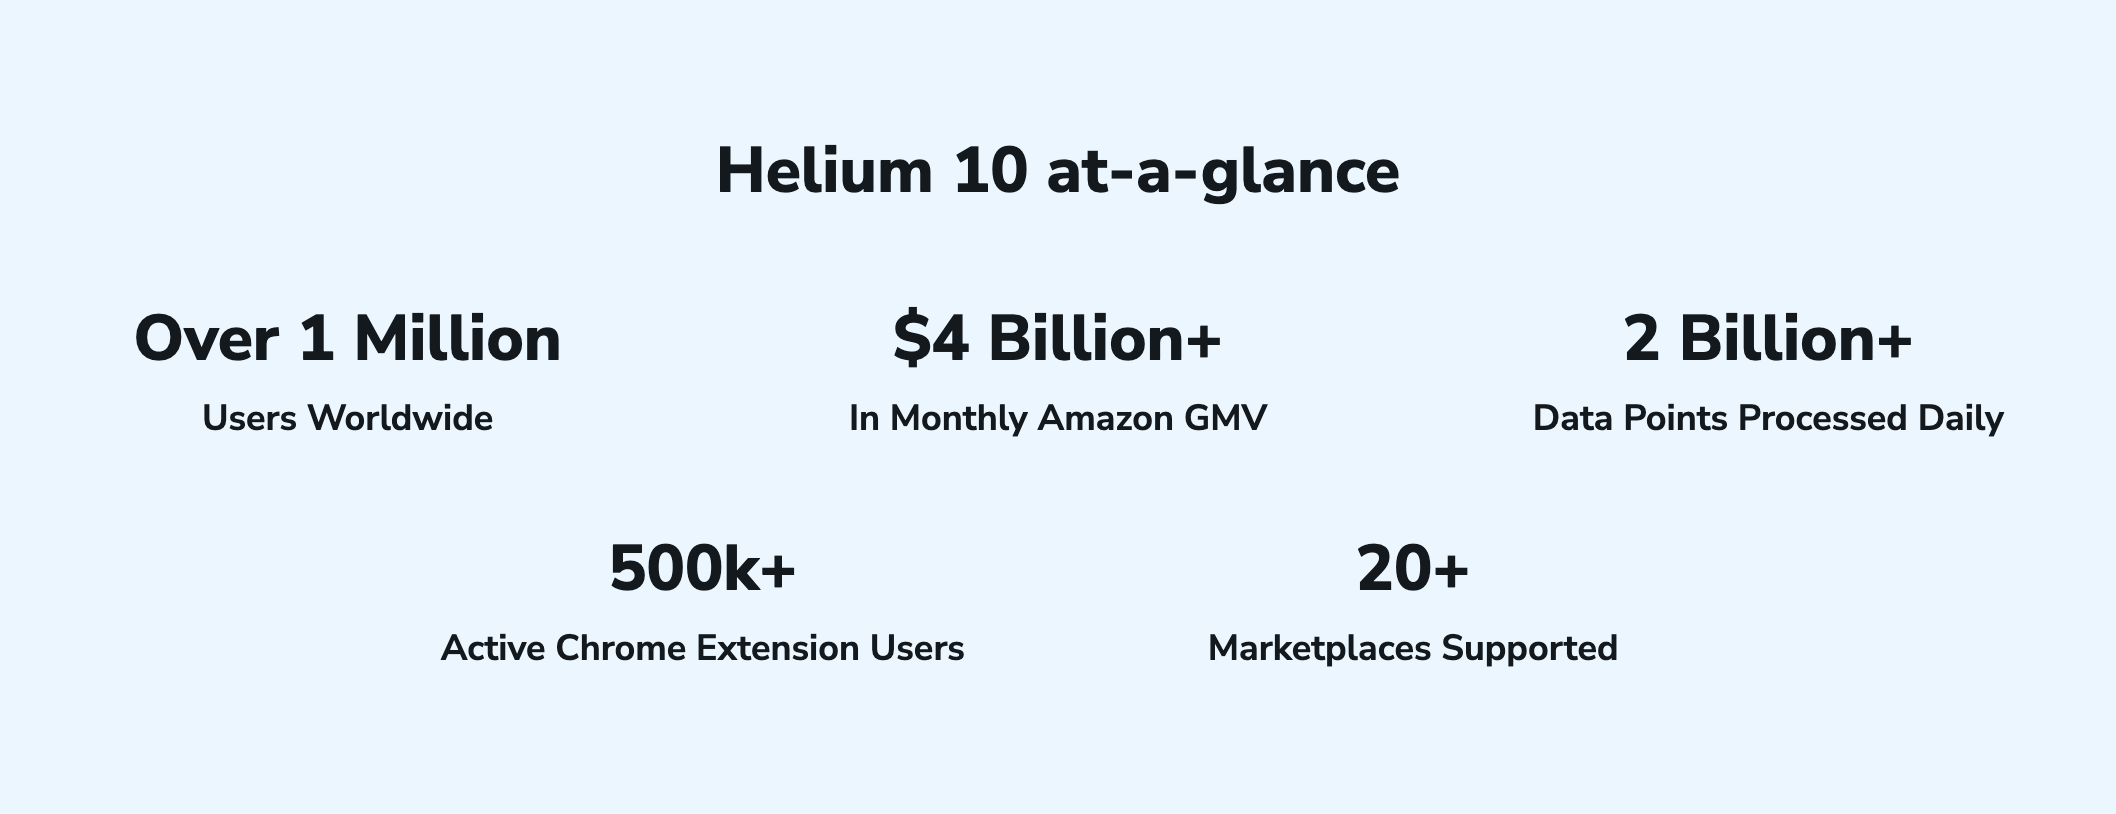 Helium 10 Summary